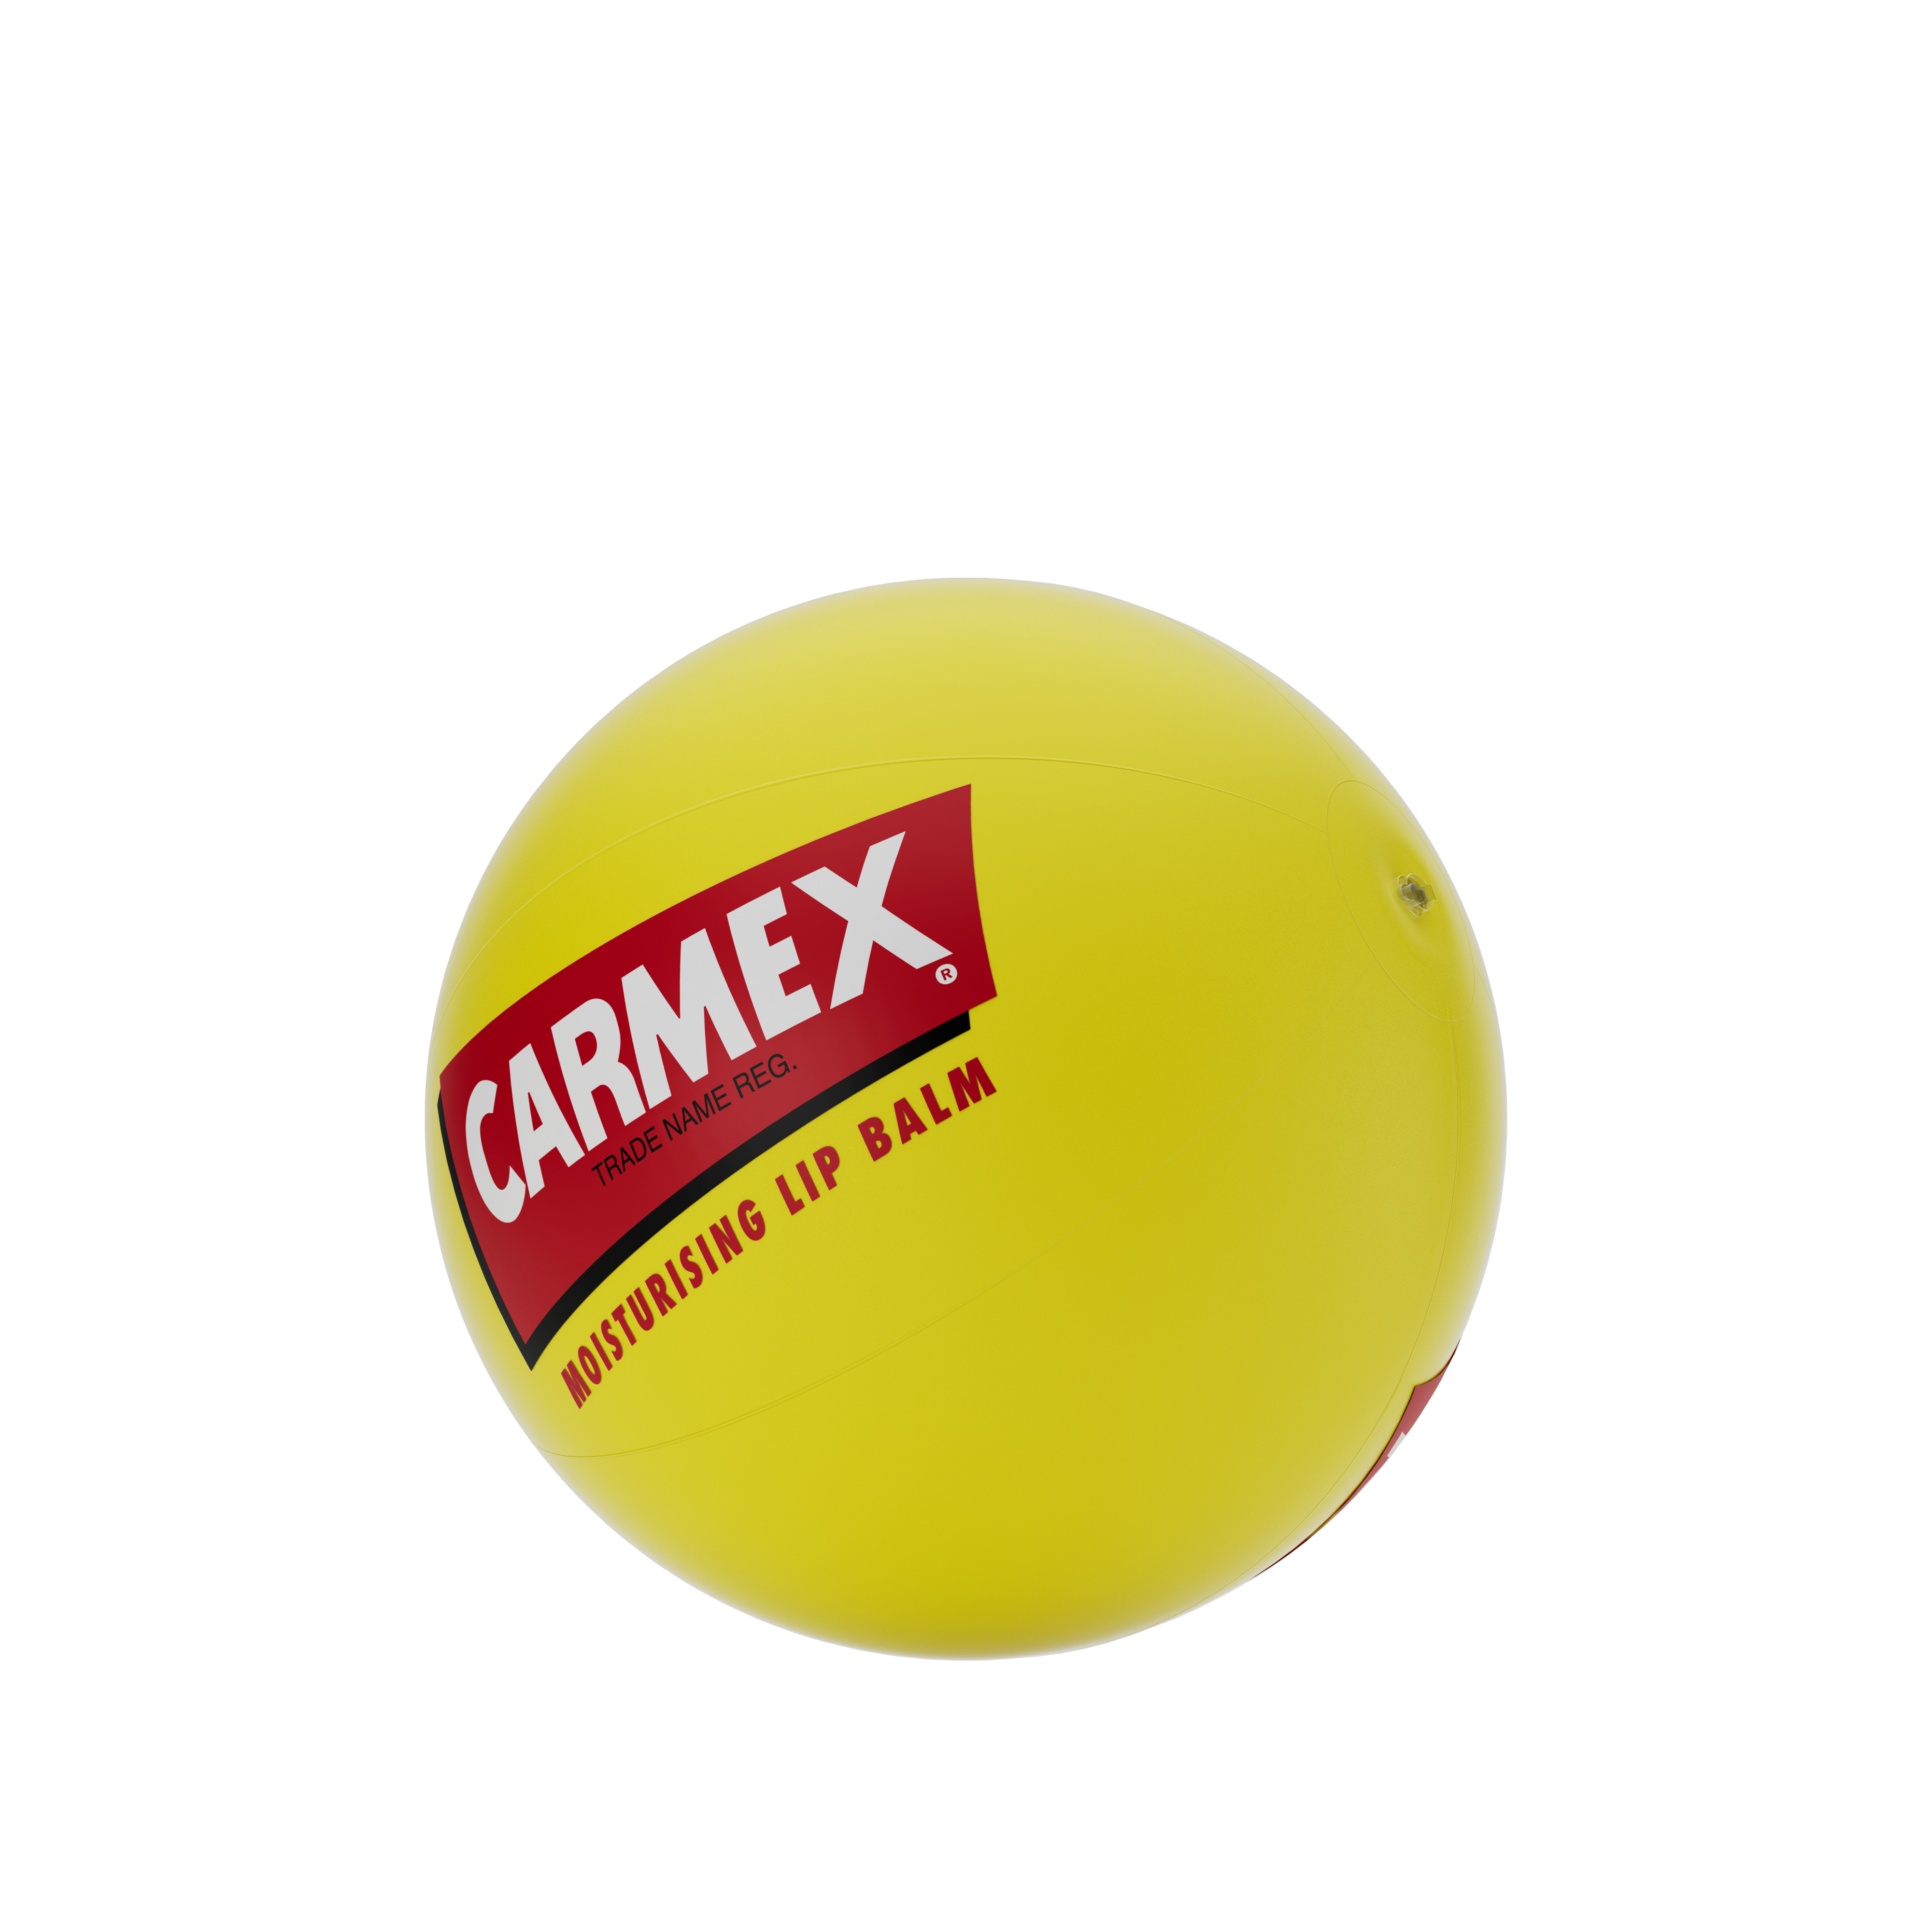 CARMEX BEACH BALLS